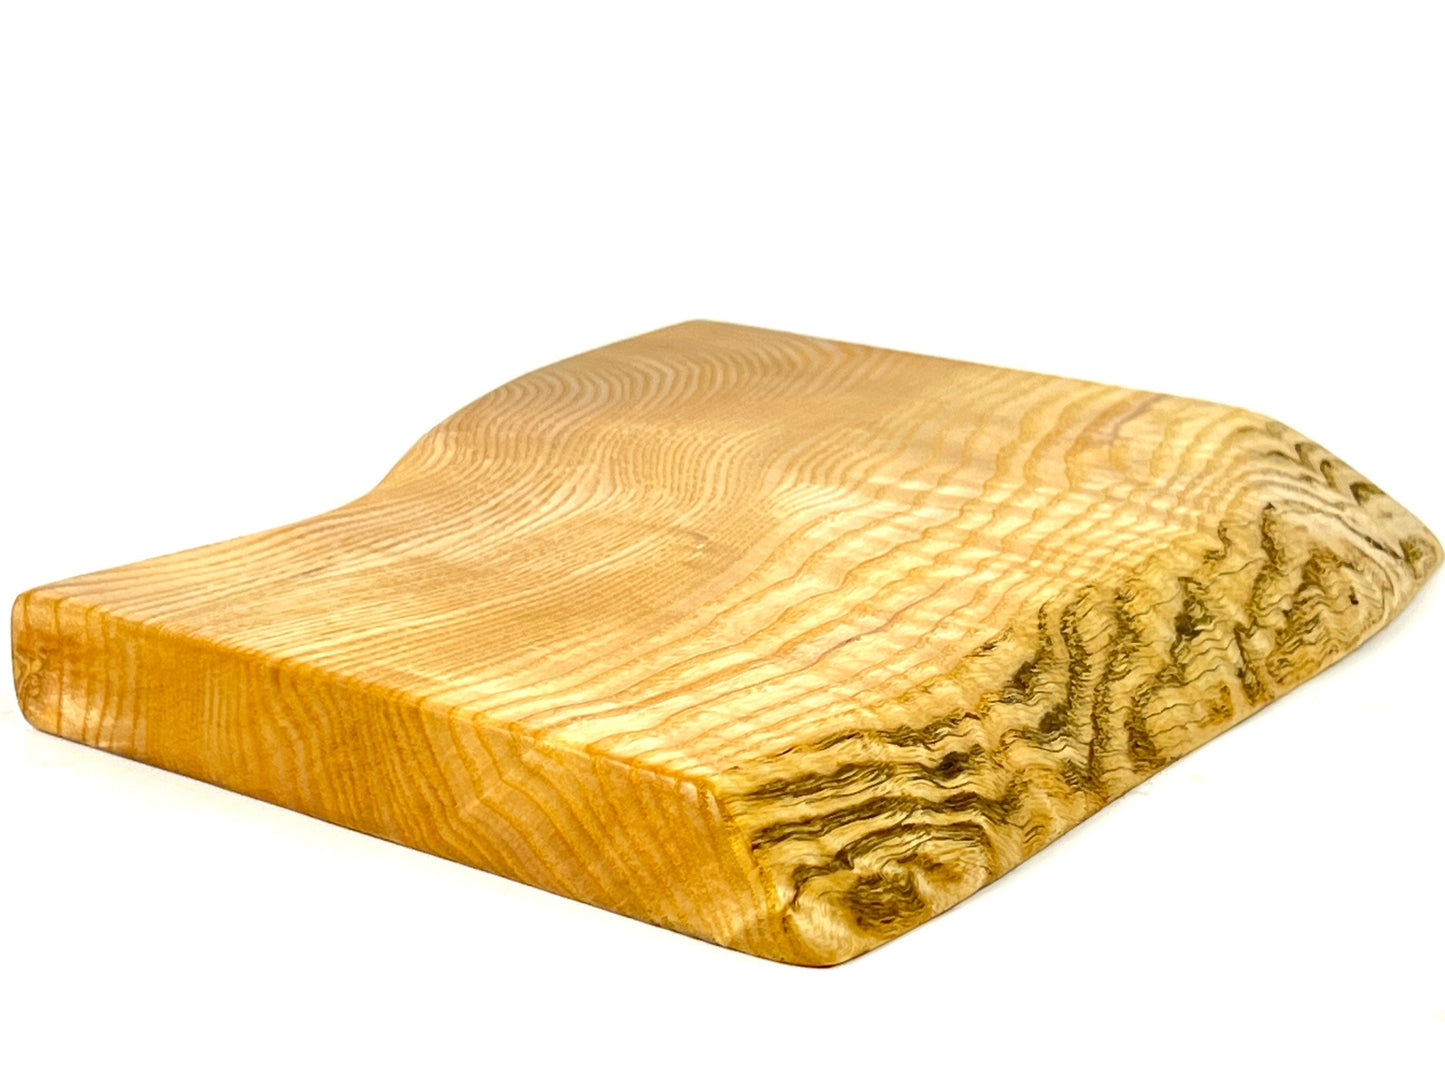 Ash 25 x 20cm cutting board